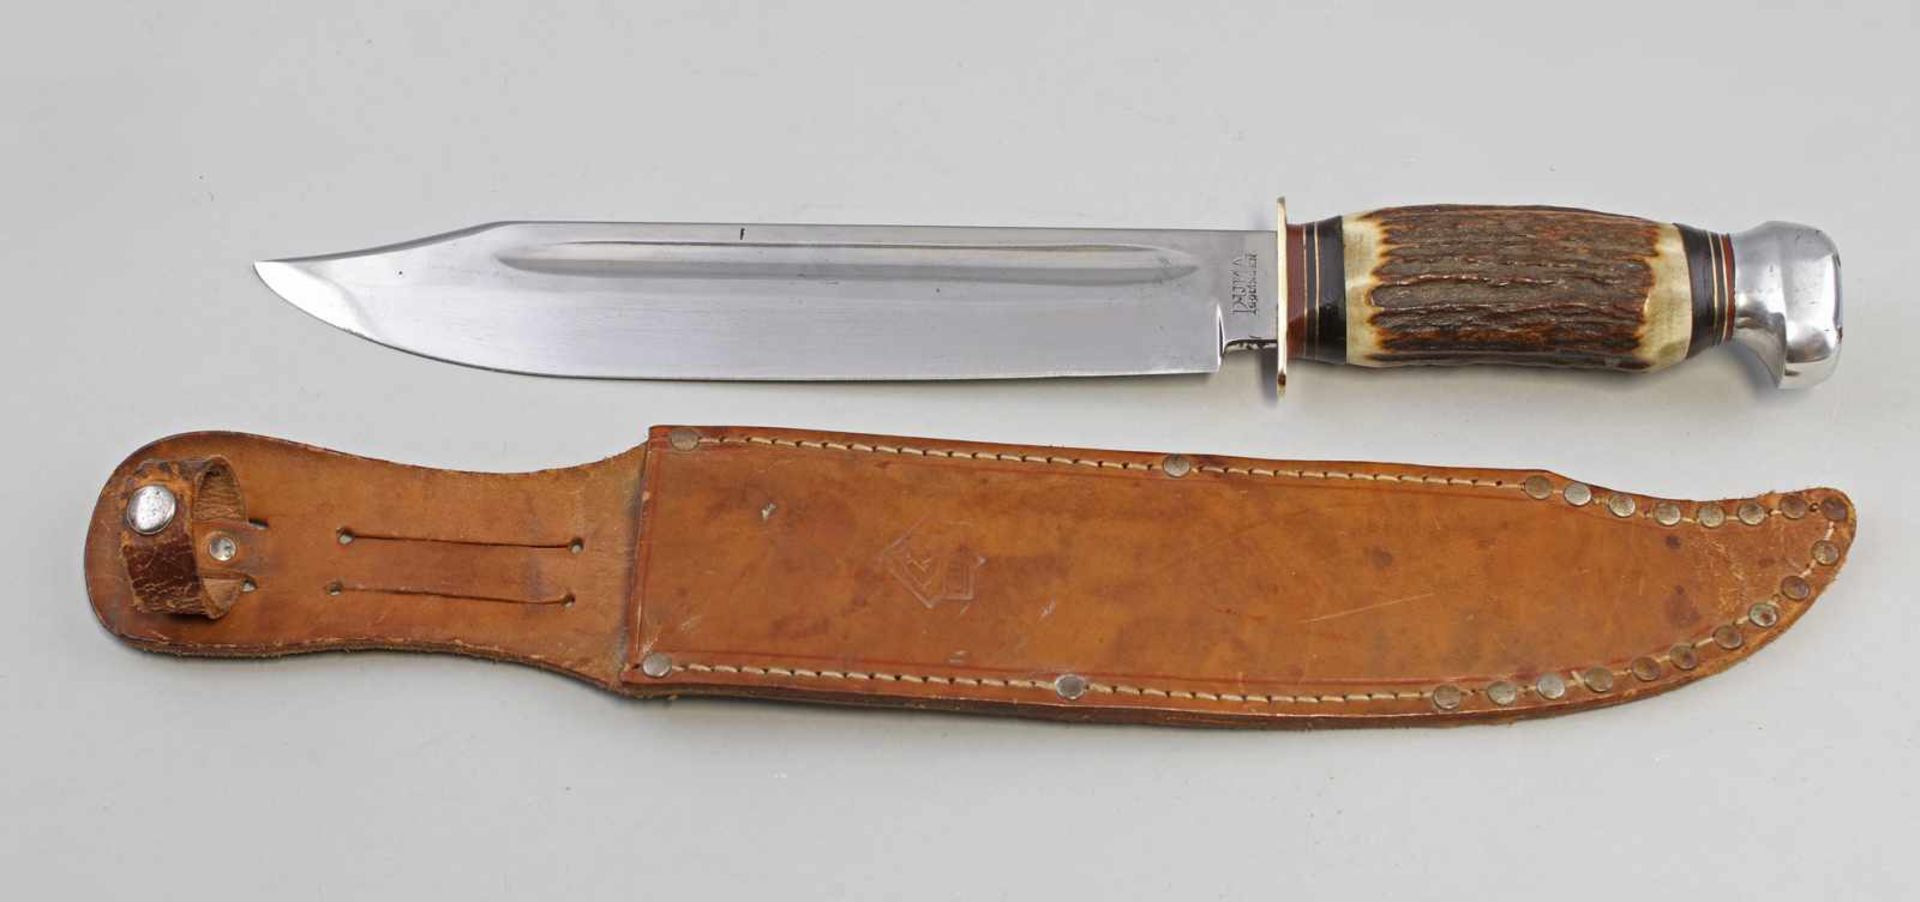 Bowie-Messer Puma Hersteller Puma Solingen, wuchtige, einschneidige Stahlklinge, bez. "No 6320 / 10"